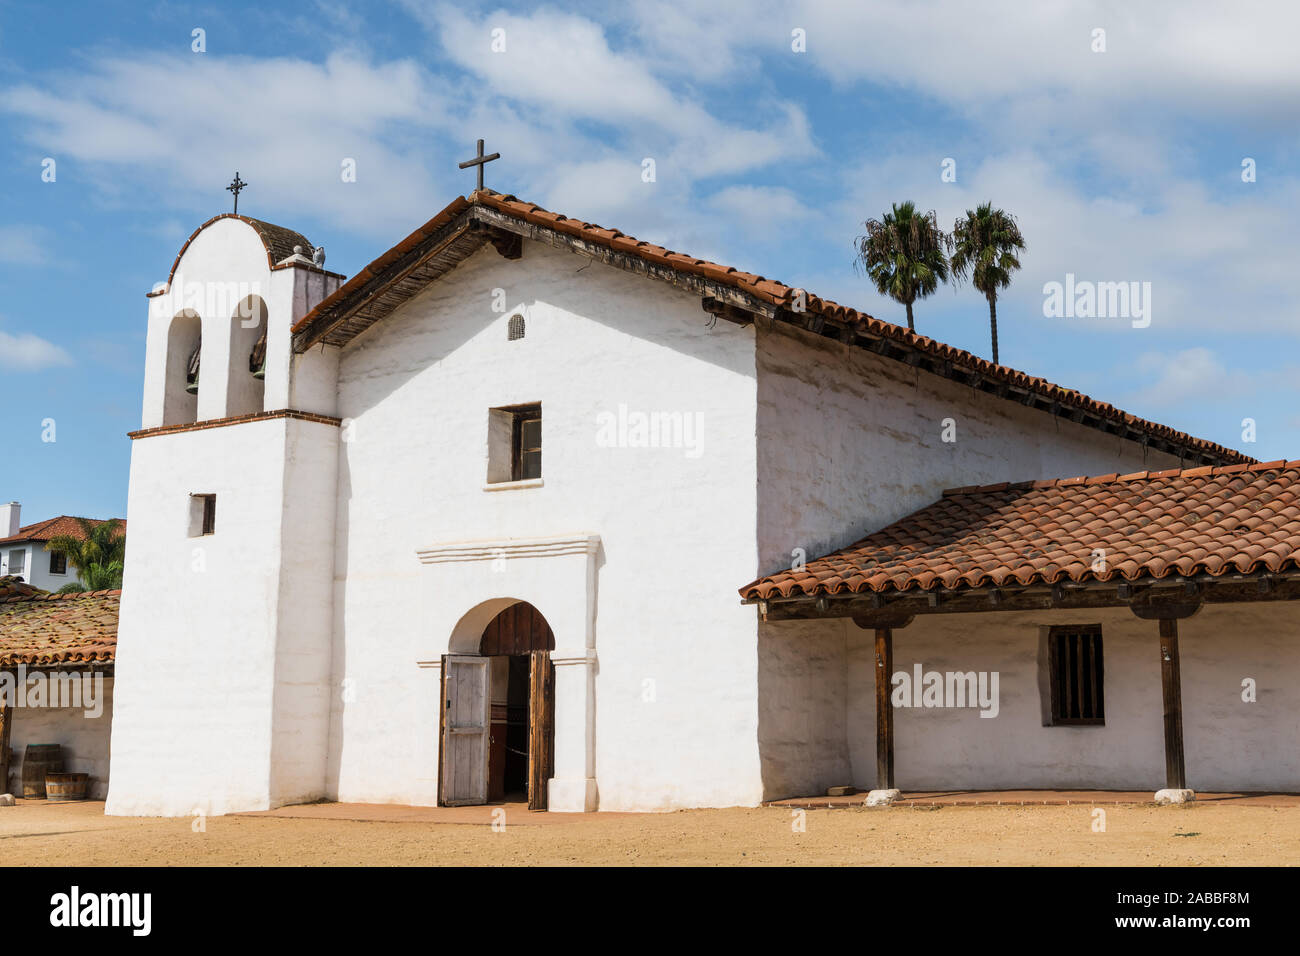 La mission de l'église blanche de style espagnol dans le El Presidio de Santa Barbara State Historic Park, Santa Barbara, Californie, USA Banque D'Images